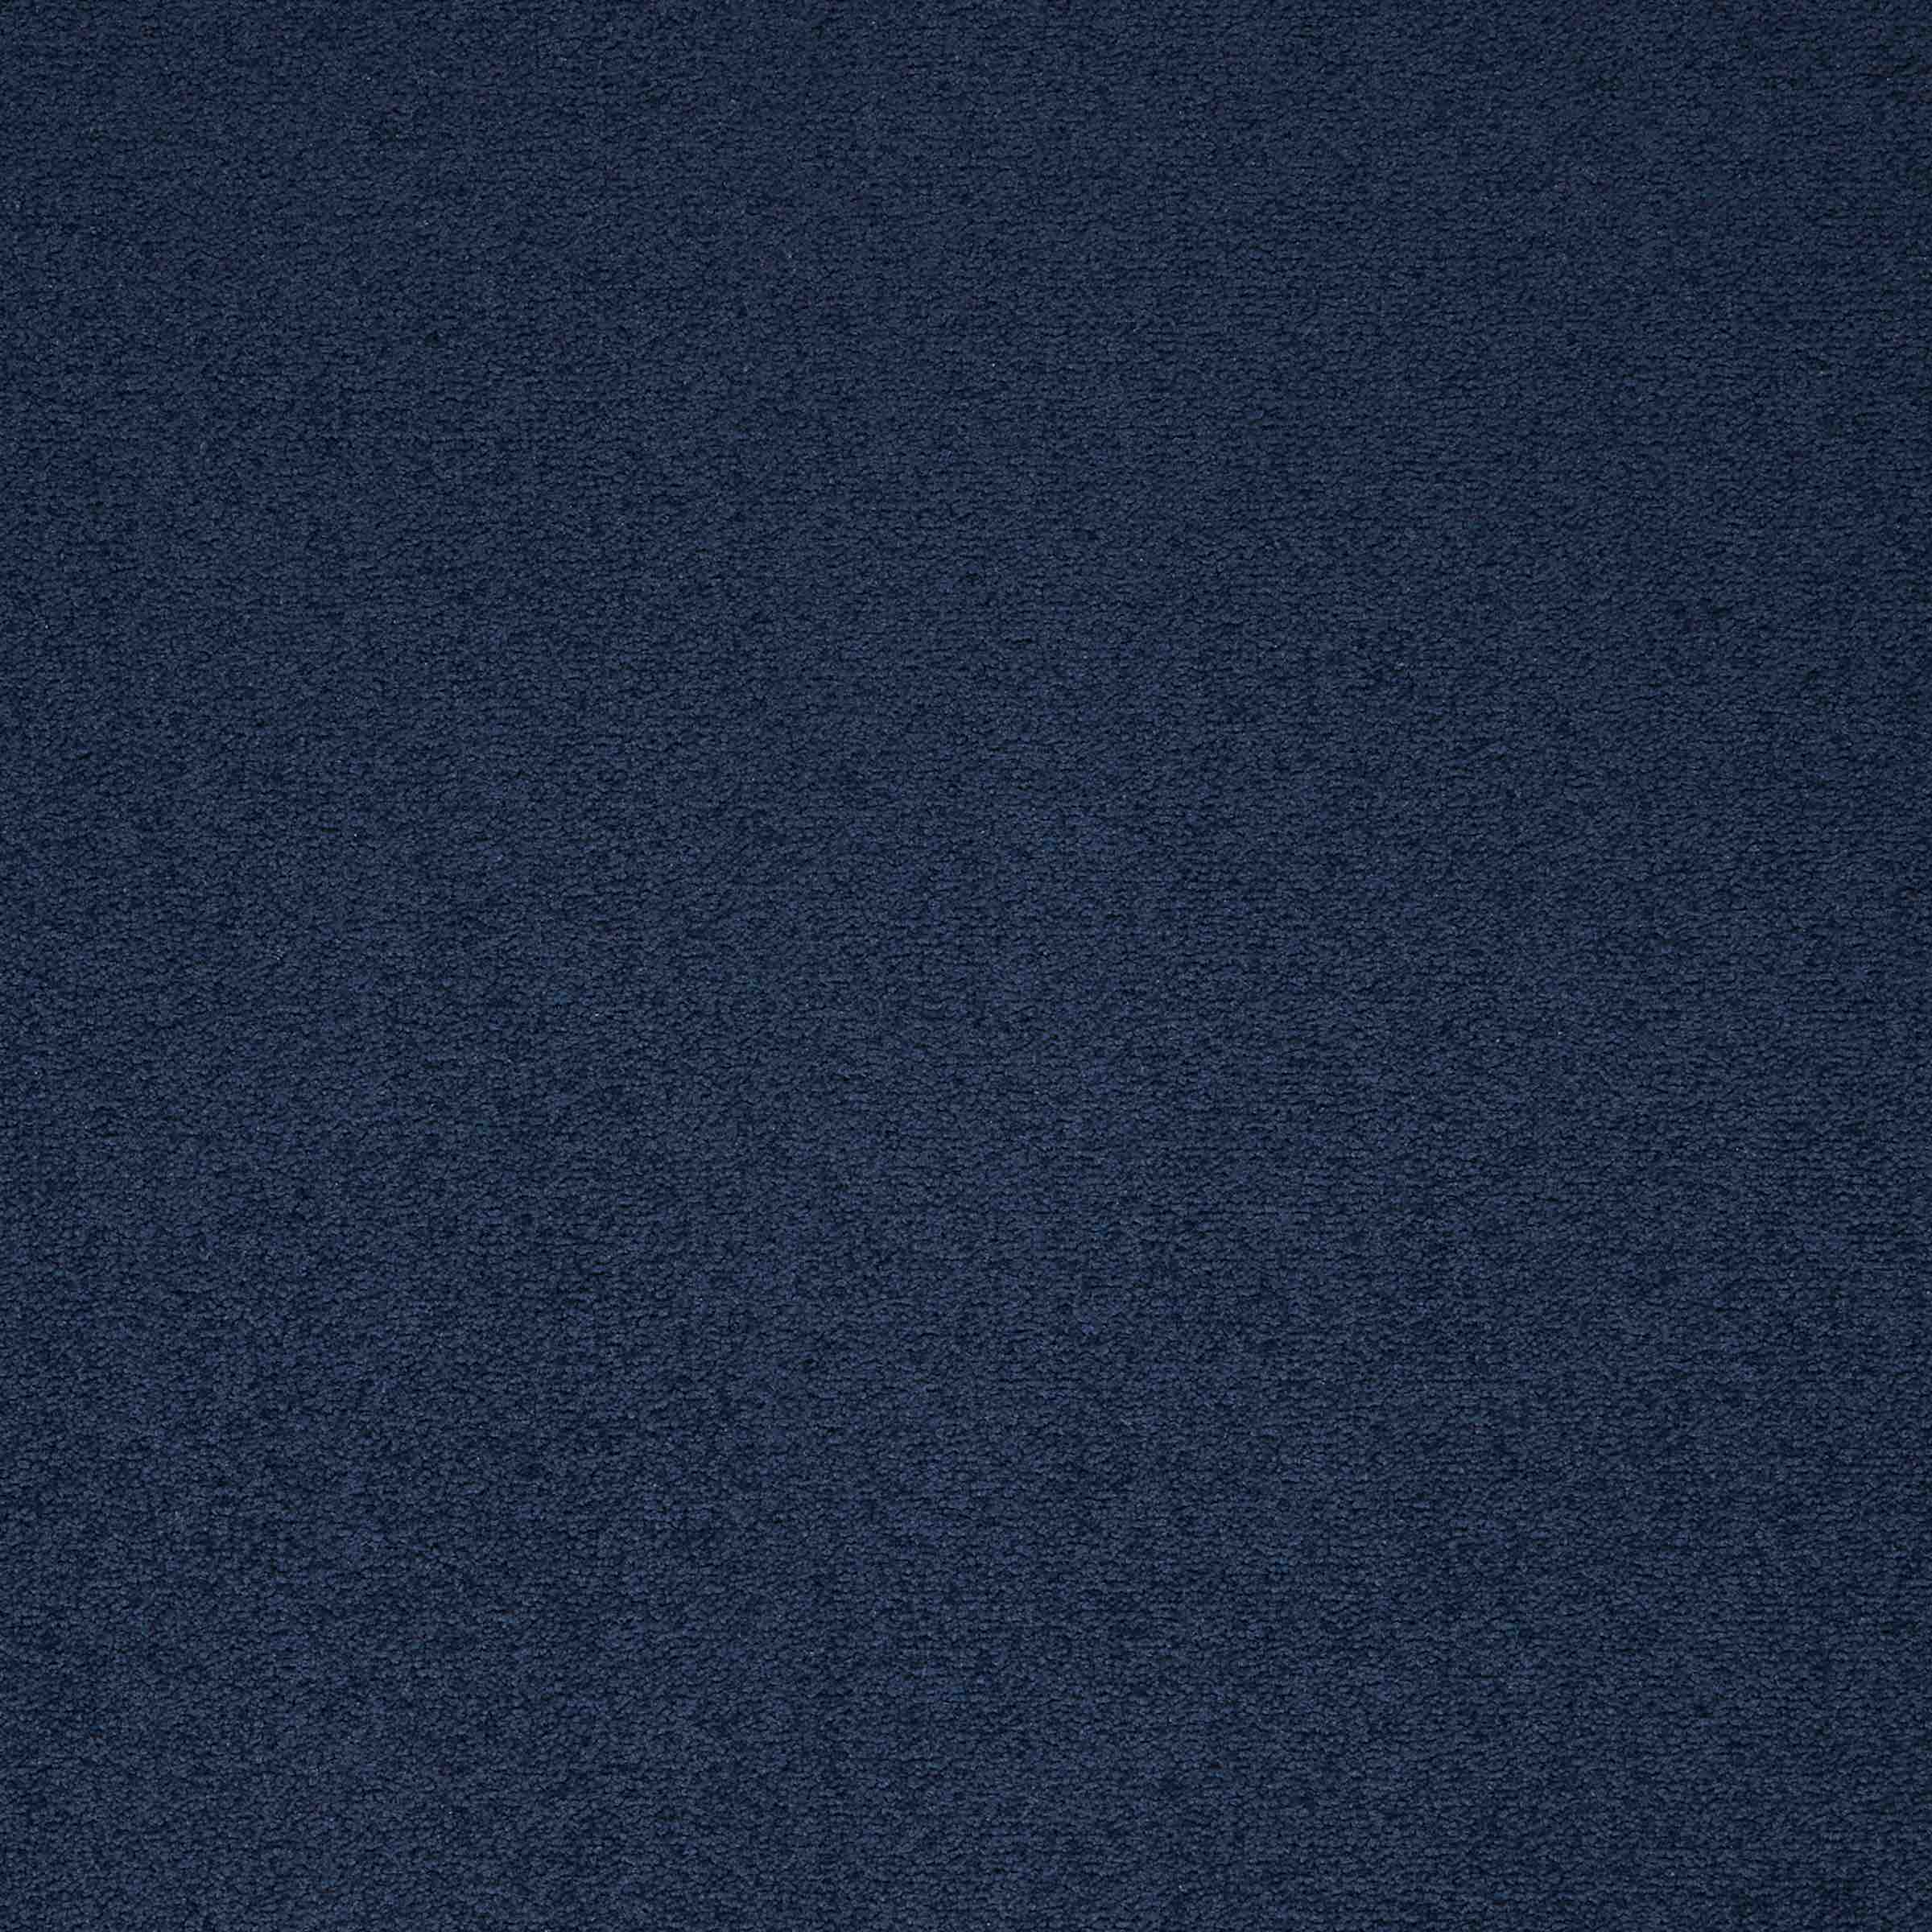 Maestro | Deep Blue, 103 | Paragon Carpet Tiles | Commercial Carpet Tiles